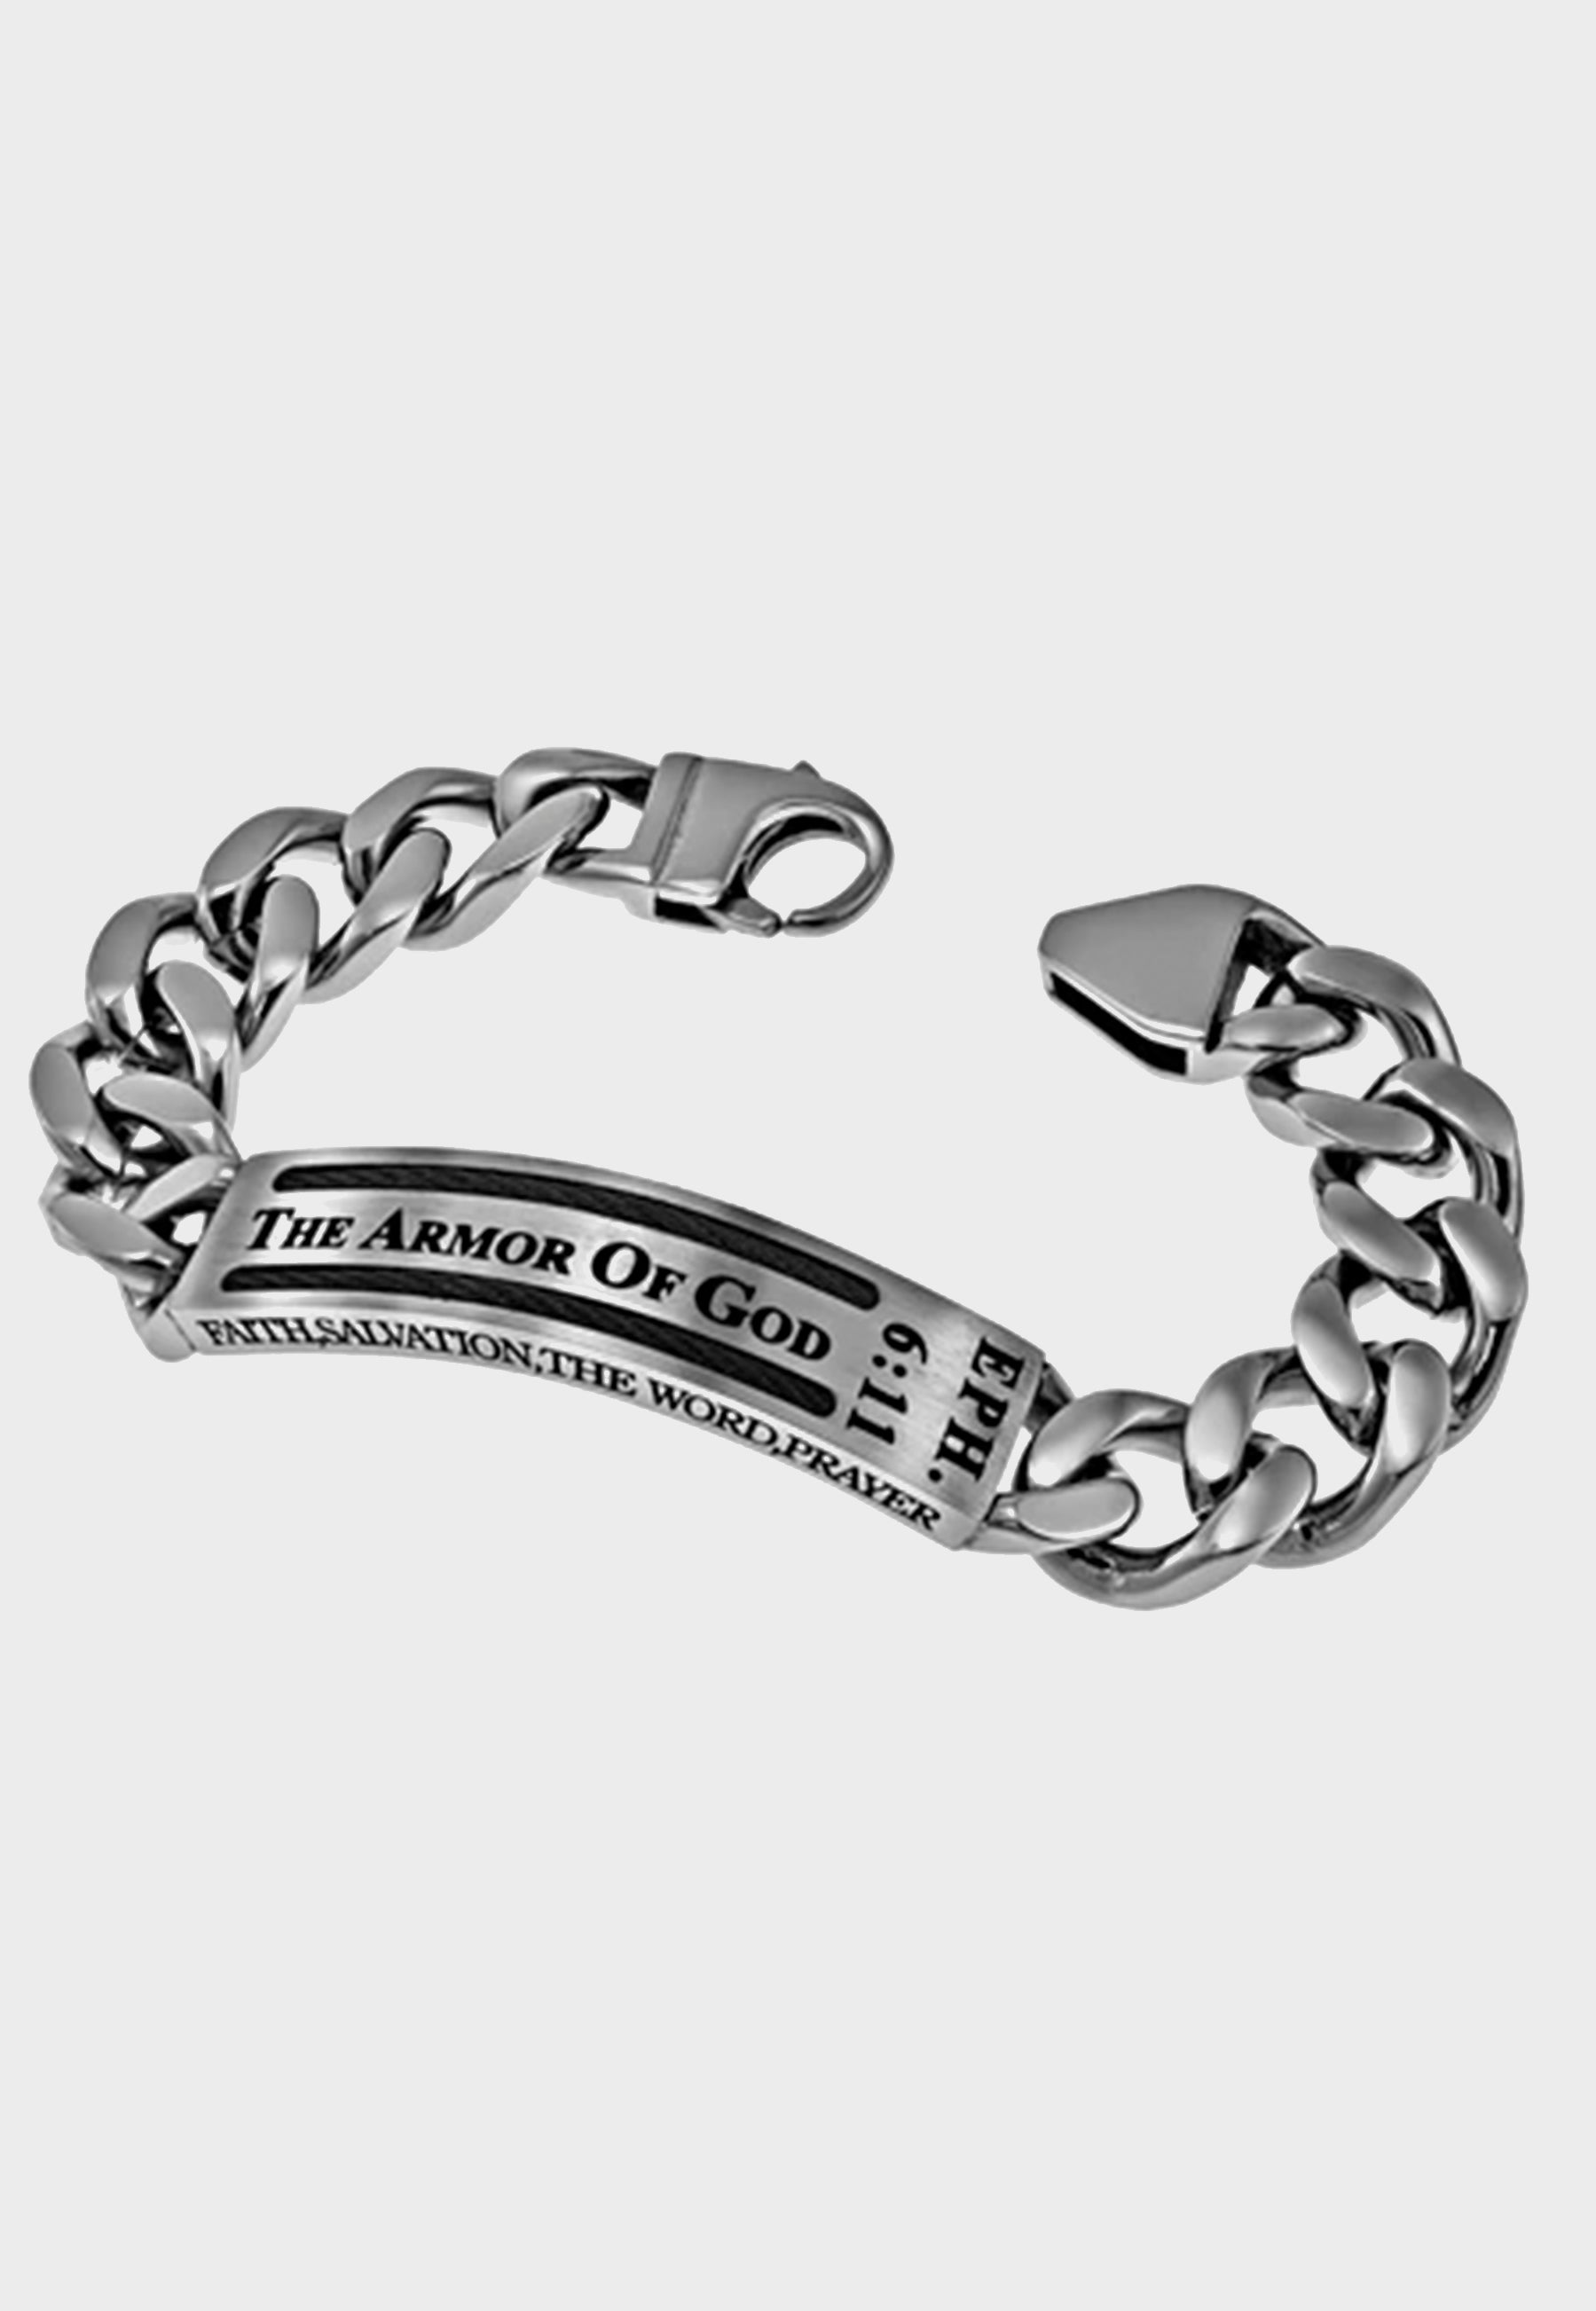 Armor of God Christian bracelet for men